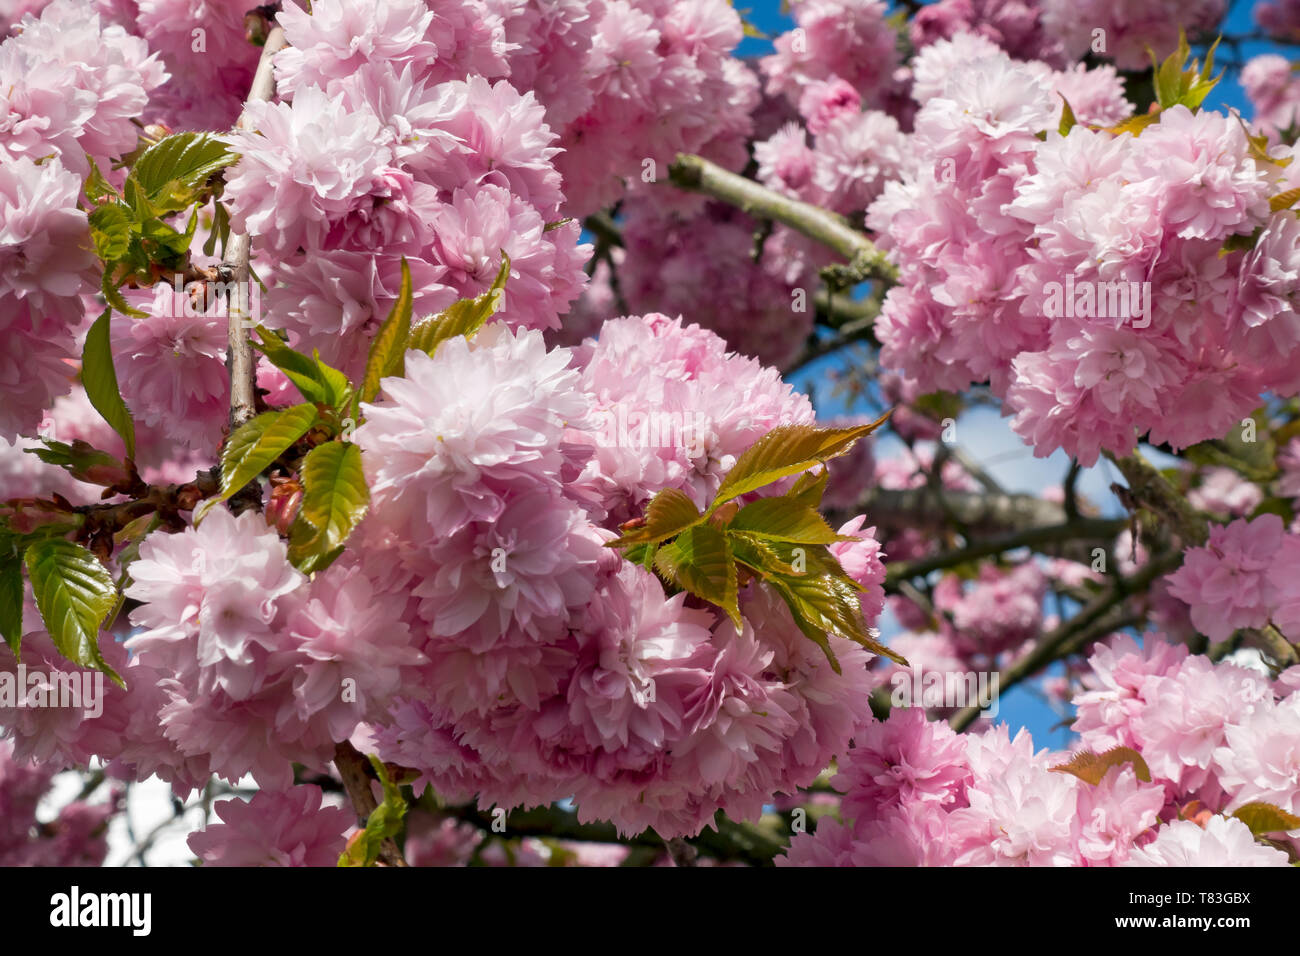 Gros plan de fleurs roses fleur ornement cerisier fleur au printemps Angleterre Royaume-Uni Grande-Bretagne Banque D'Images